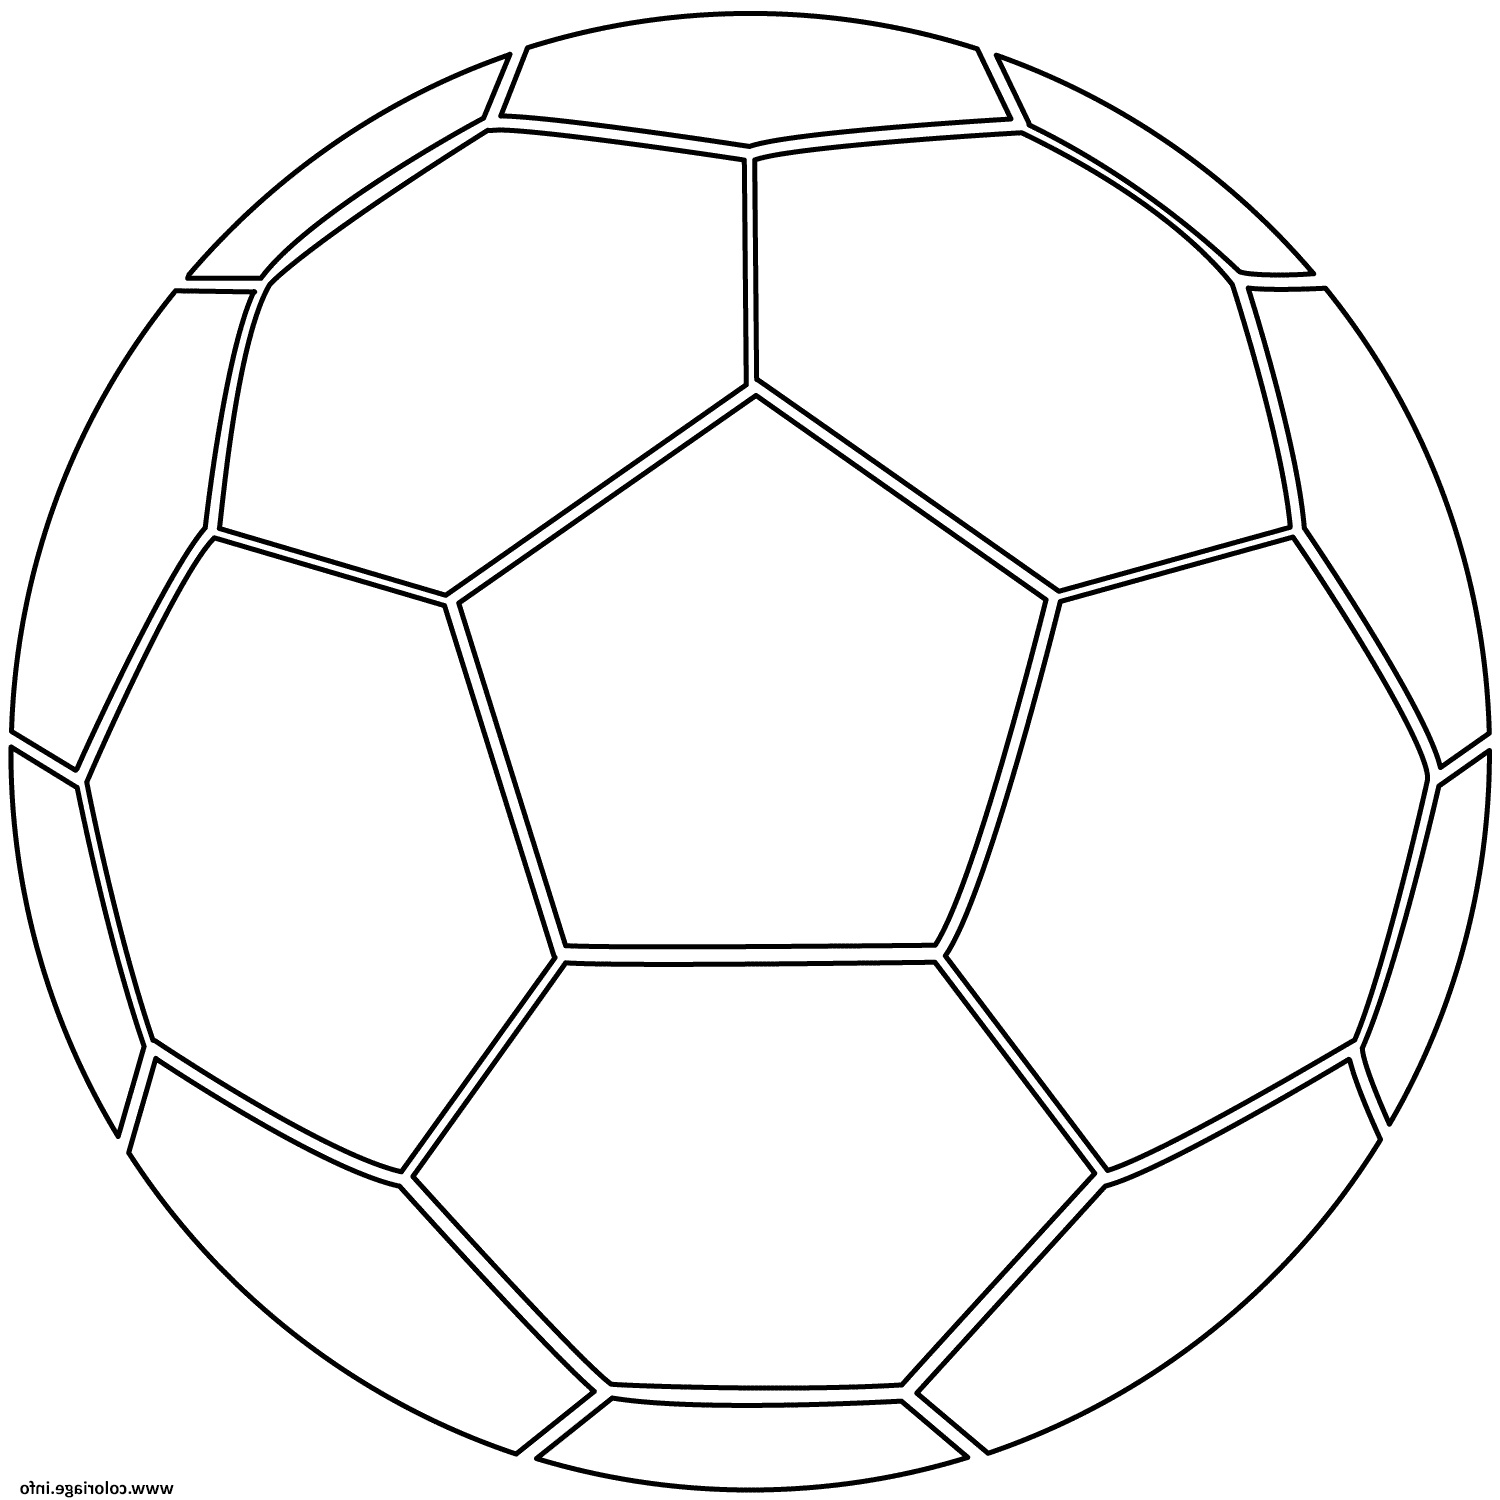 Coloriage De Football Élégant Photographie Coloriage Ballon De Foot soccer Jecolorie